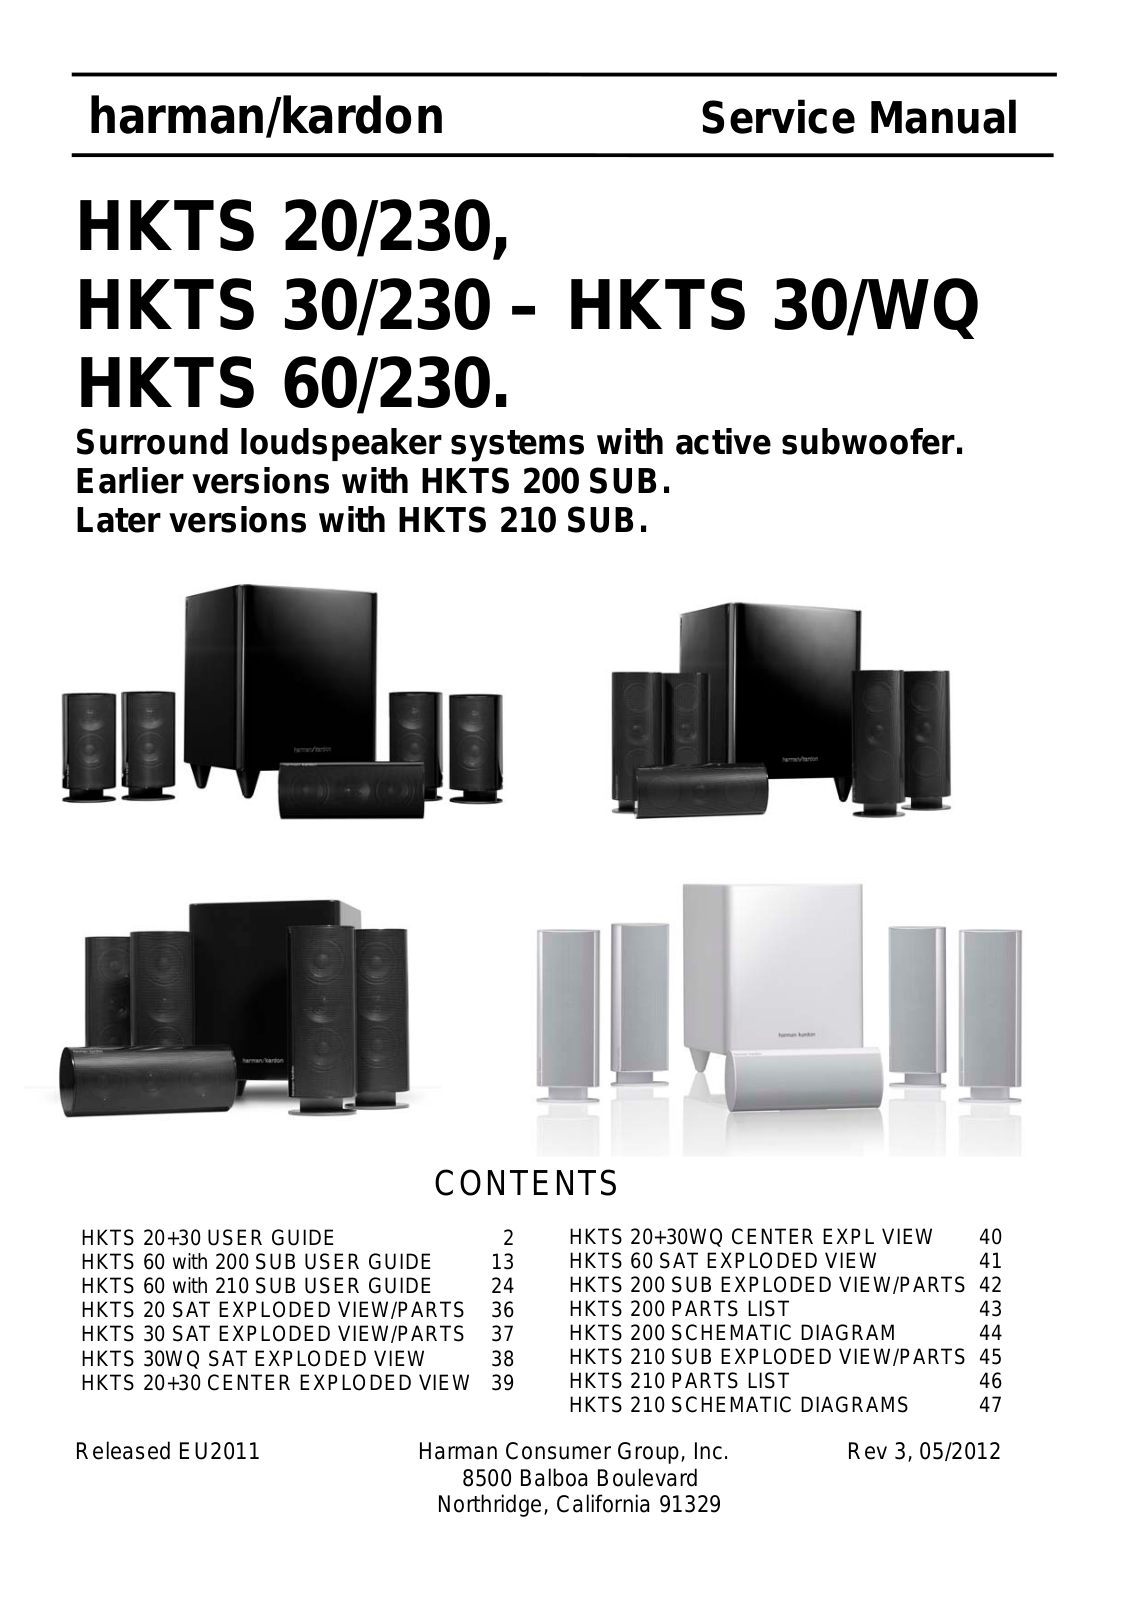 Harman Kardon HKTS-60-230, HKTS-30-WQ, HKTS-30-230, HKTS-20-230 Service Manual